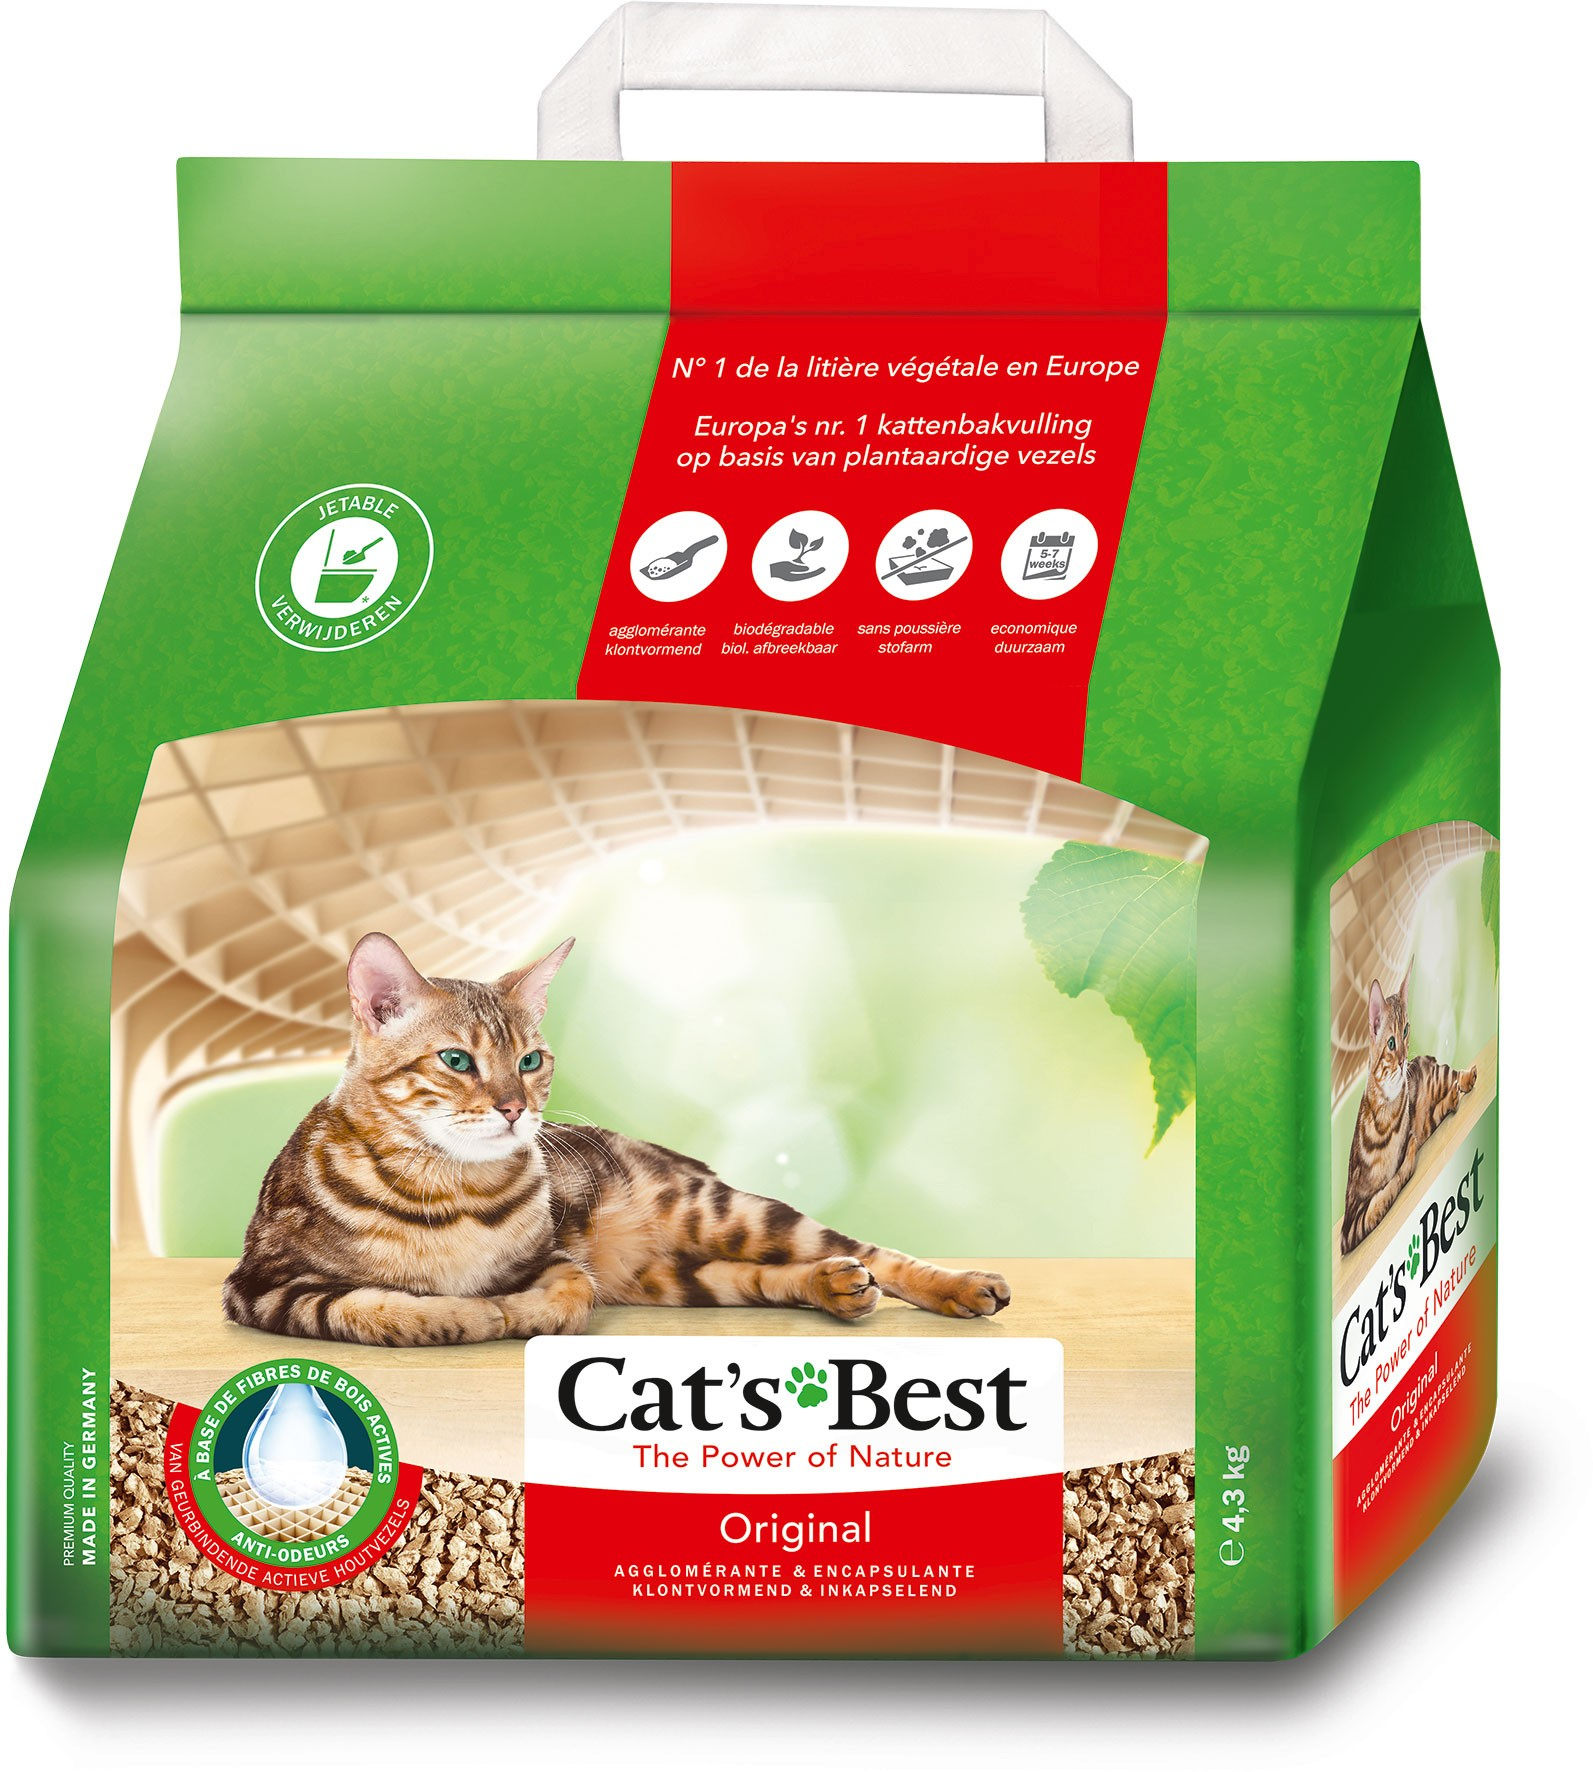 Cat’s Best Original - lettiera vegetale agglomerante per gatto